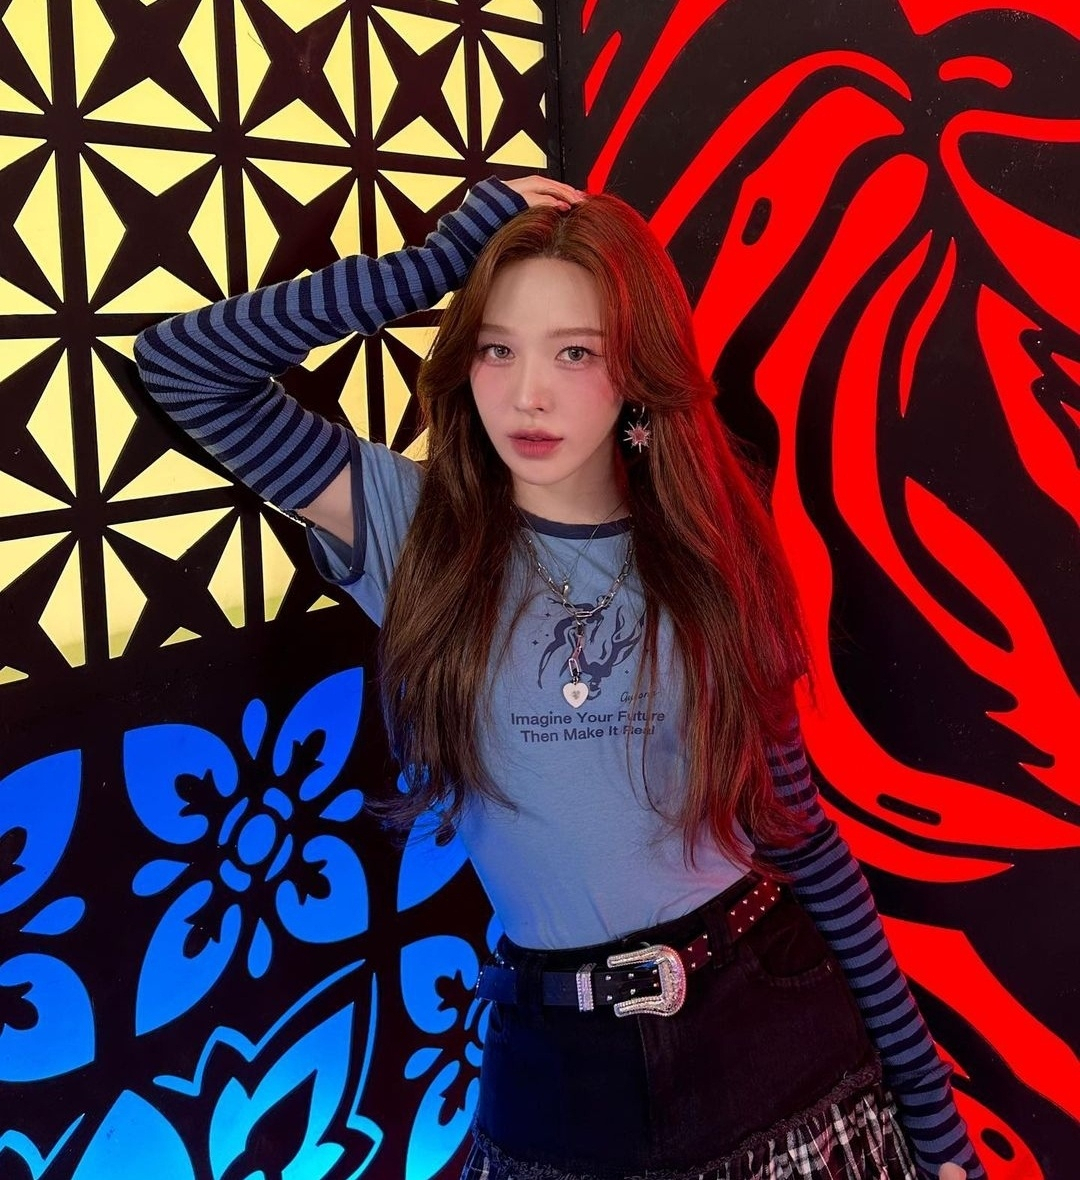 Wendy (Wendy's Instagram)